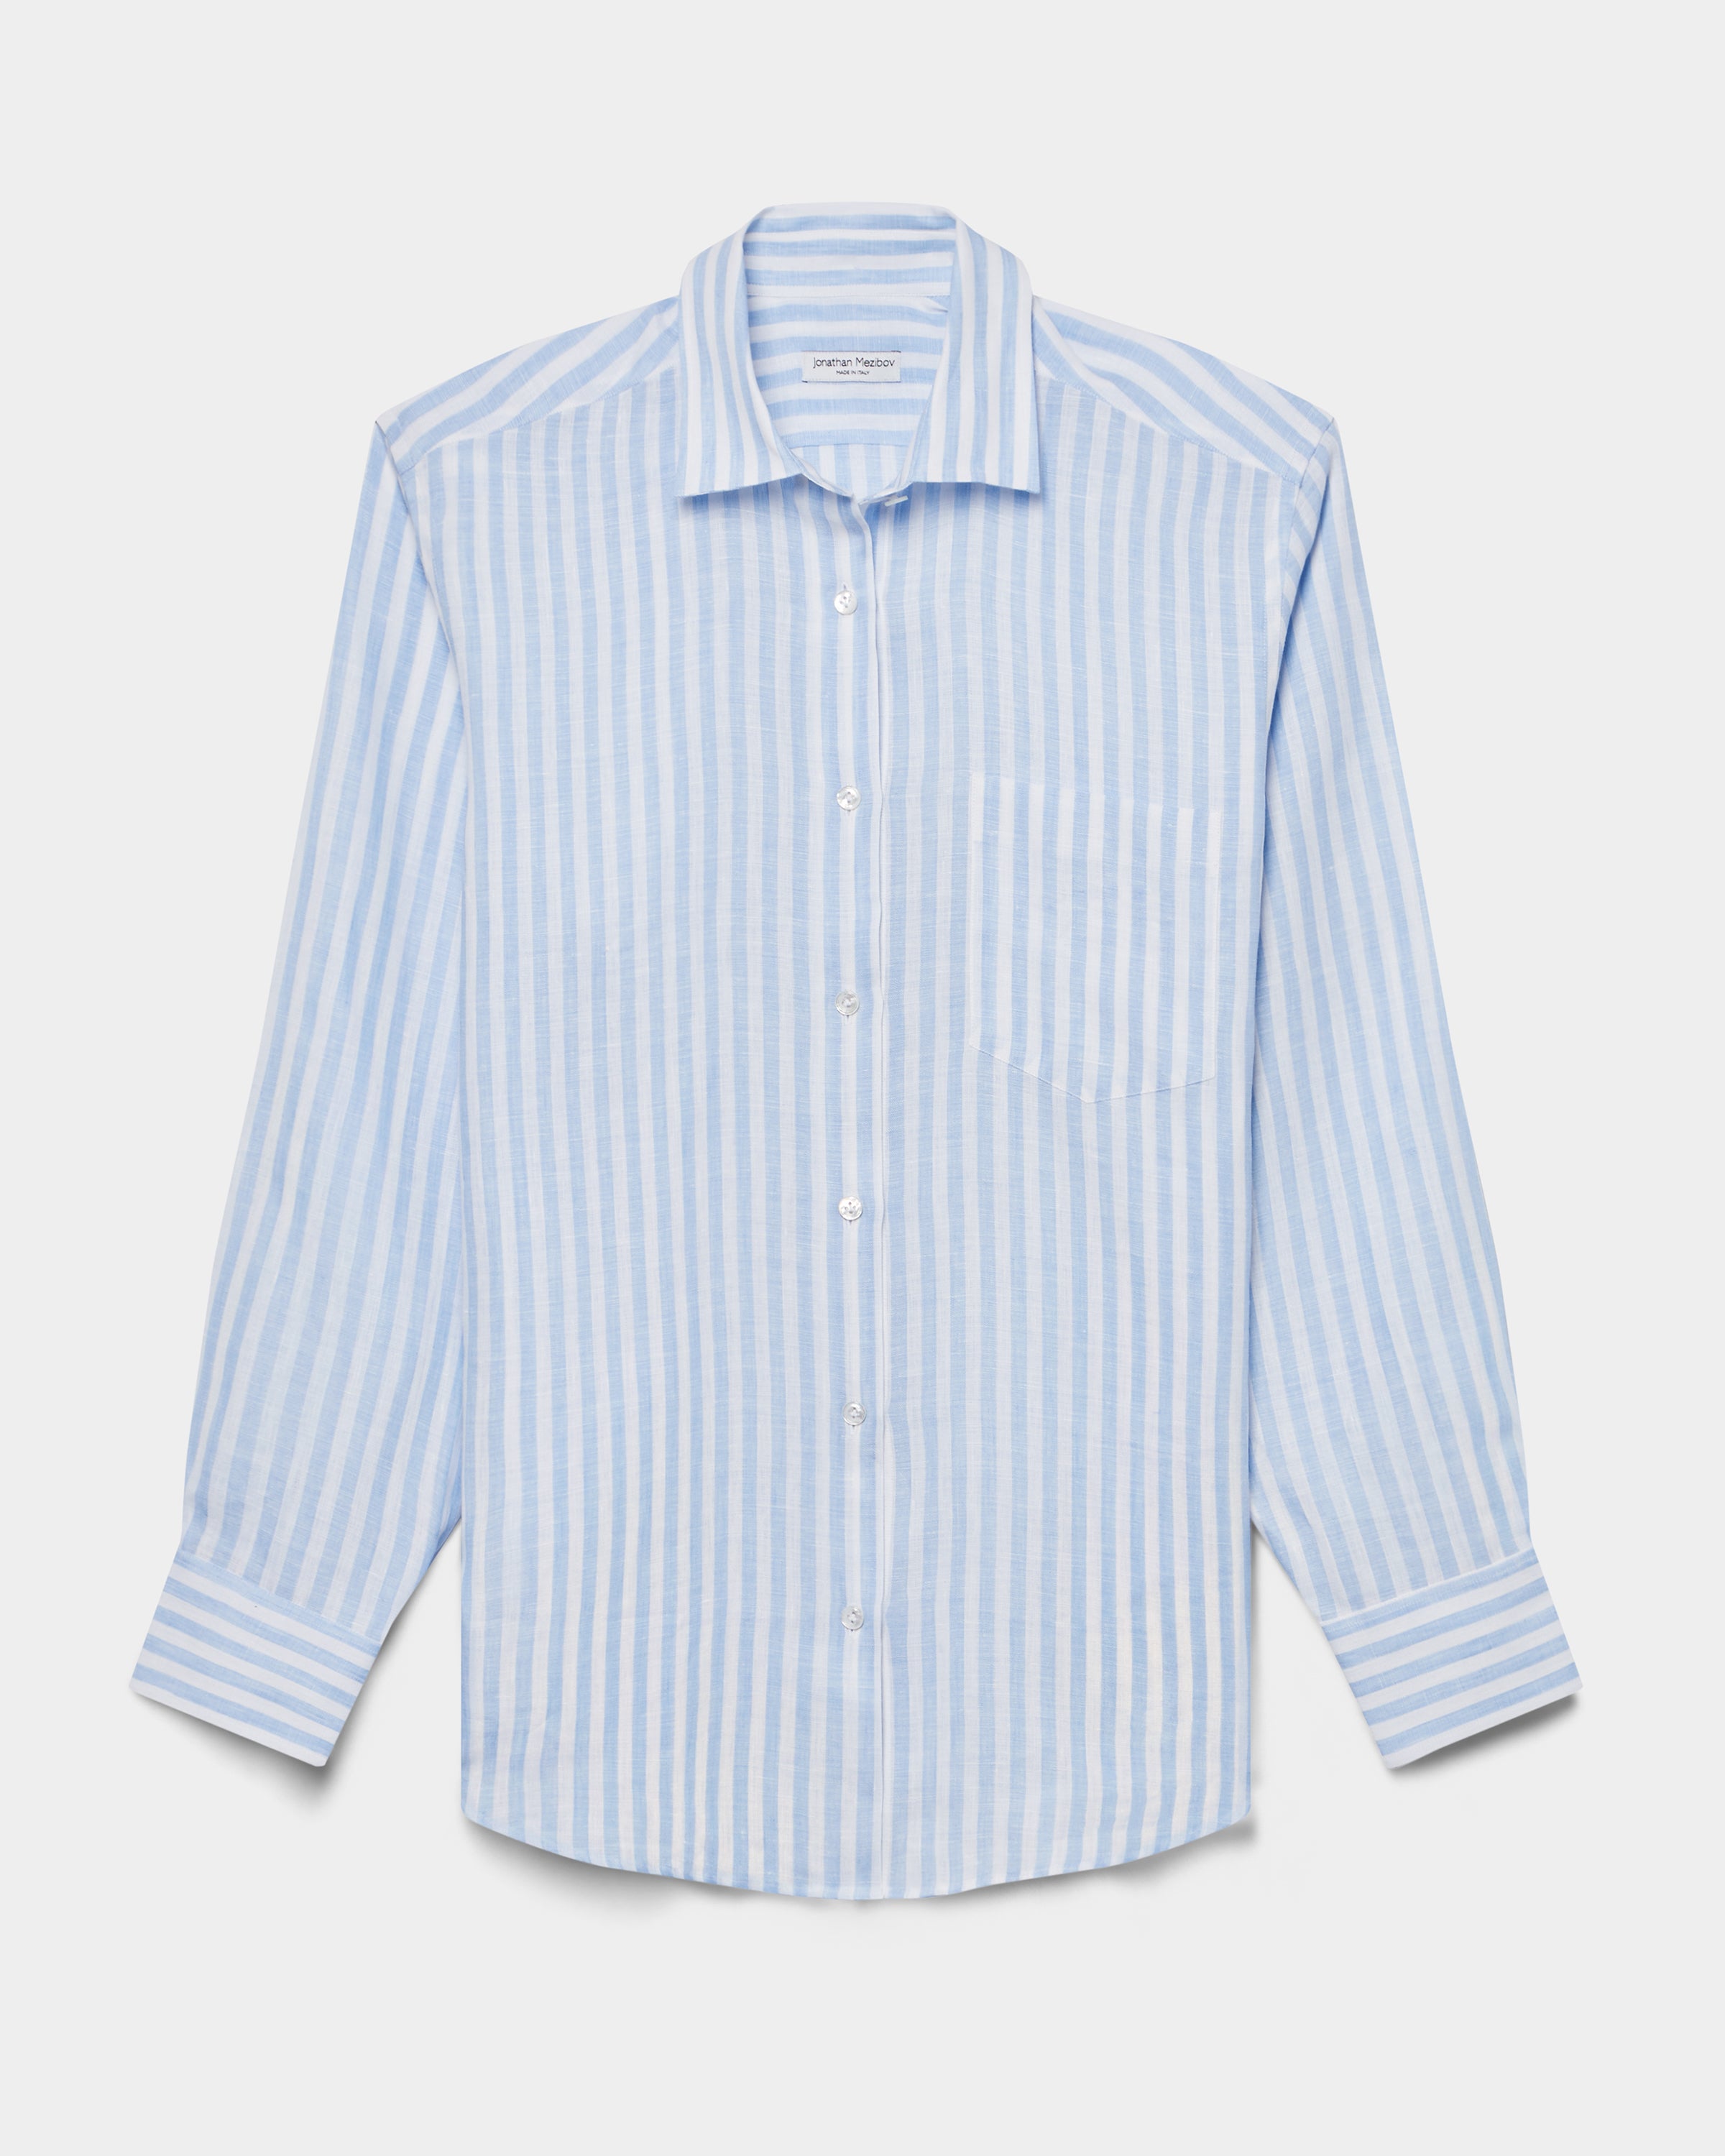 Fletcher Linen Shirt - Preorder